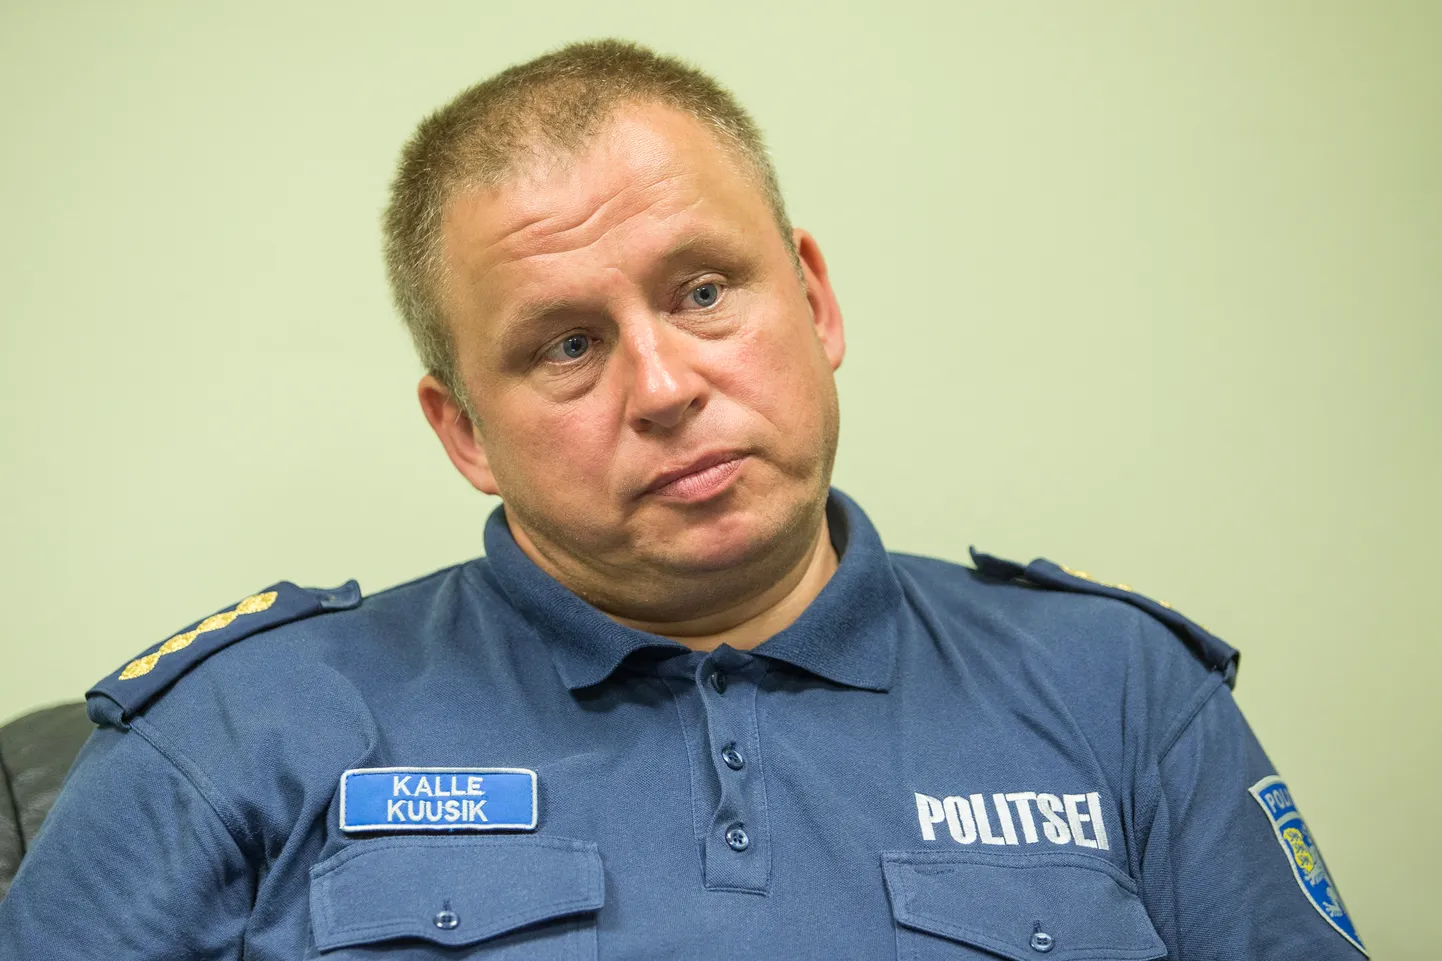 Kalle Kuusik.